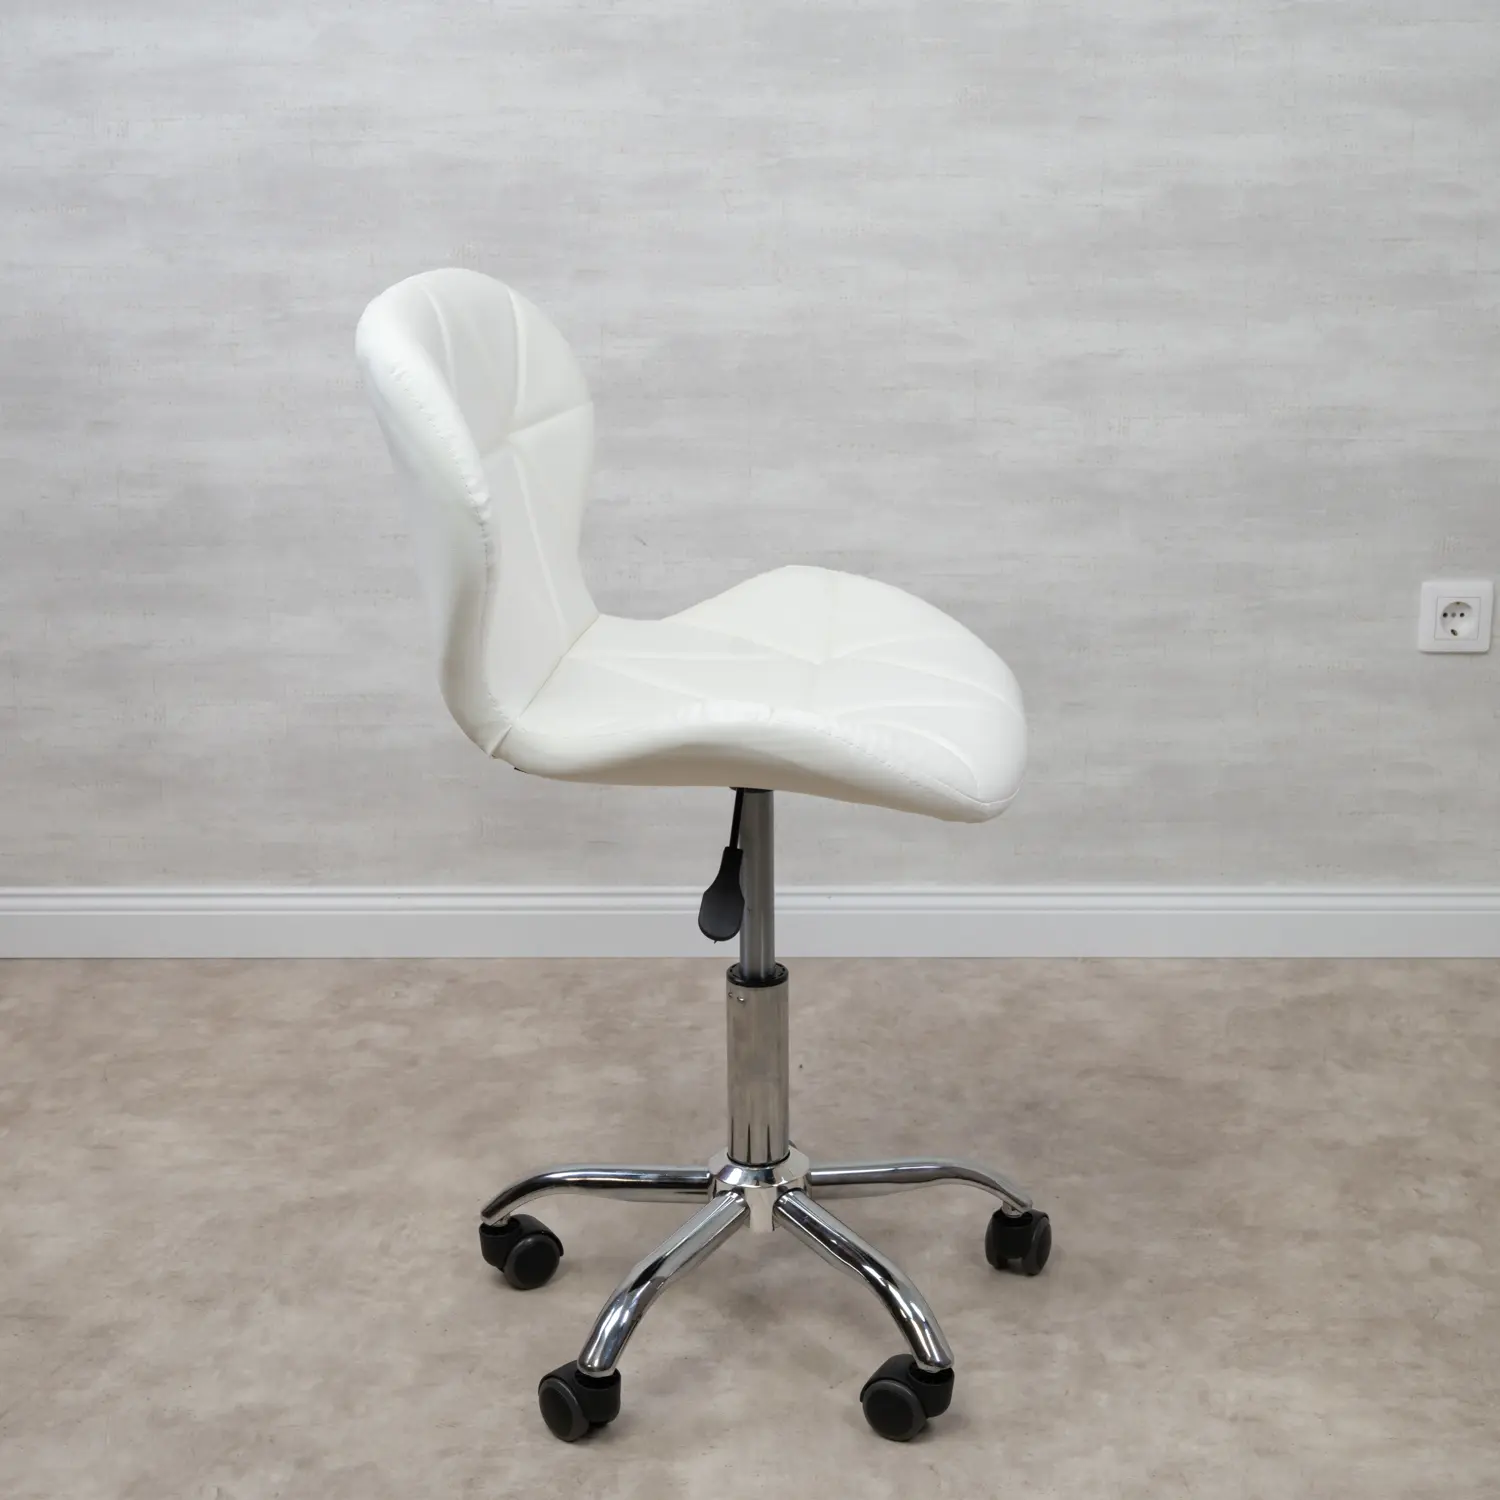 Gurulós szék, irodai szék fehér műbőr 2db-os kiszerelés (GURULÓS-SZÉK-3-FEHÉR)